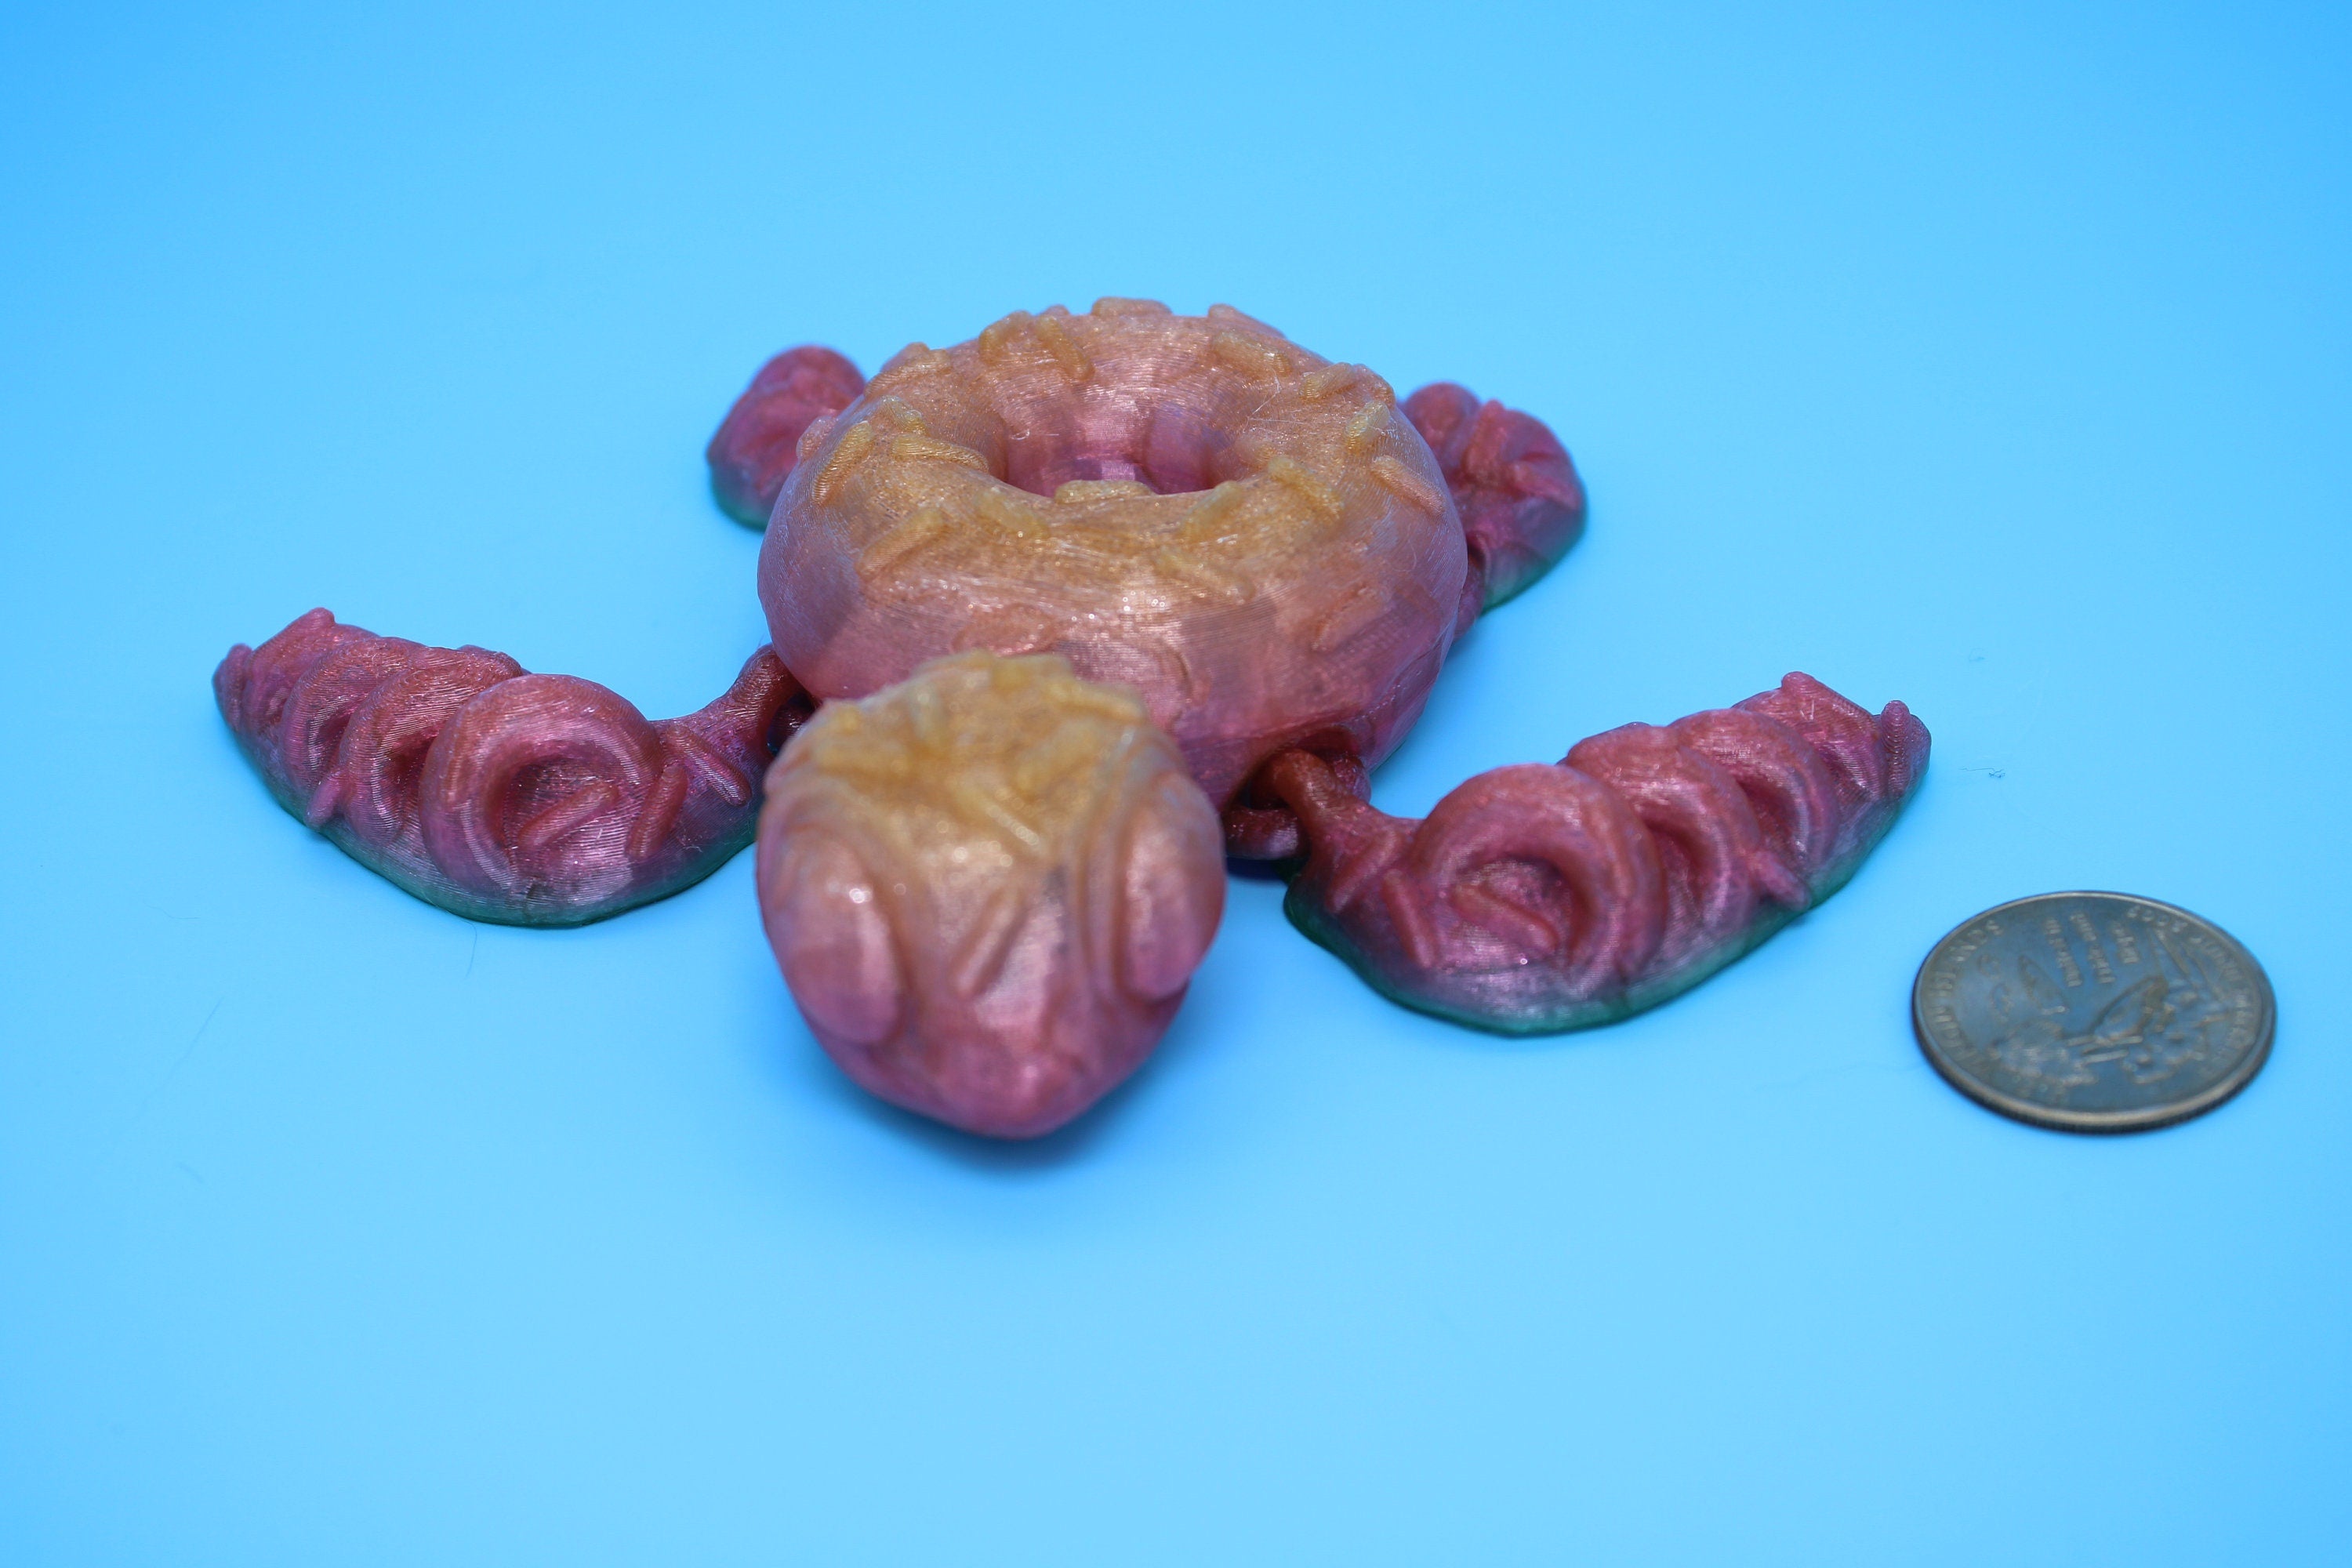 Turtle - Doughnut Turtle | Articulating (Donurtle) | 3D Printed TPU | Flexi Fidget Turtle | Desk Fidget Toy.